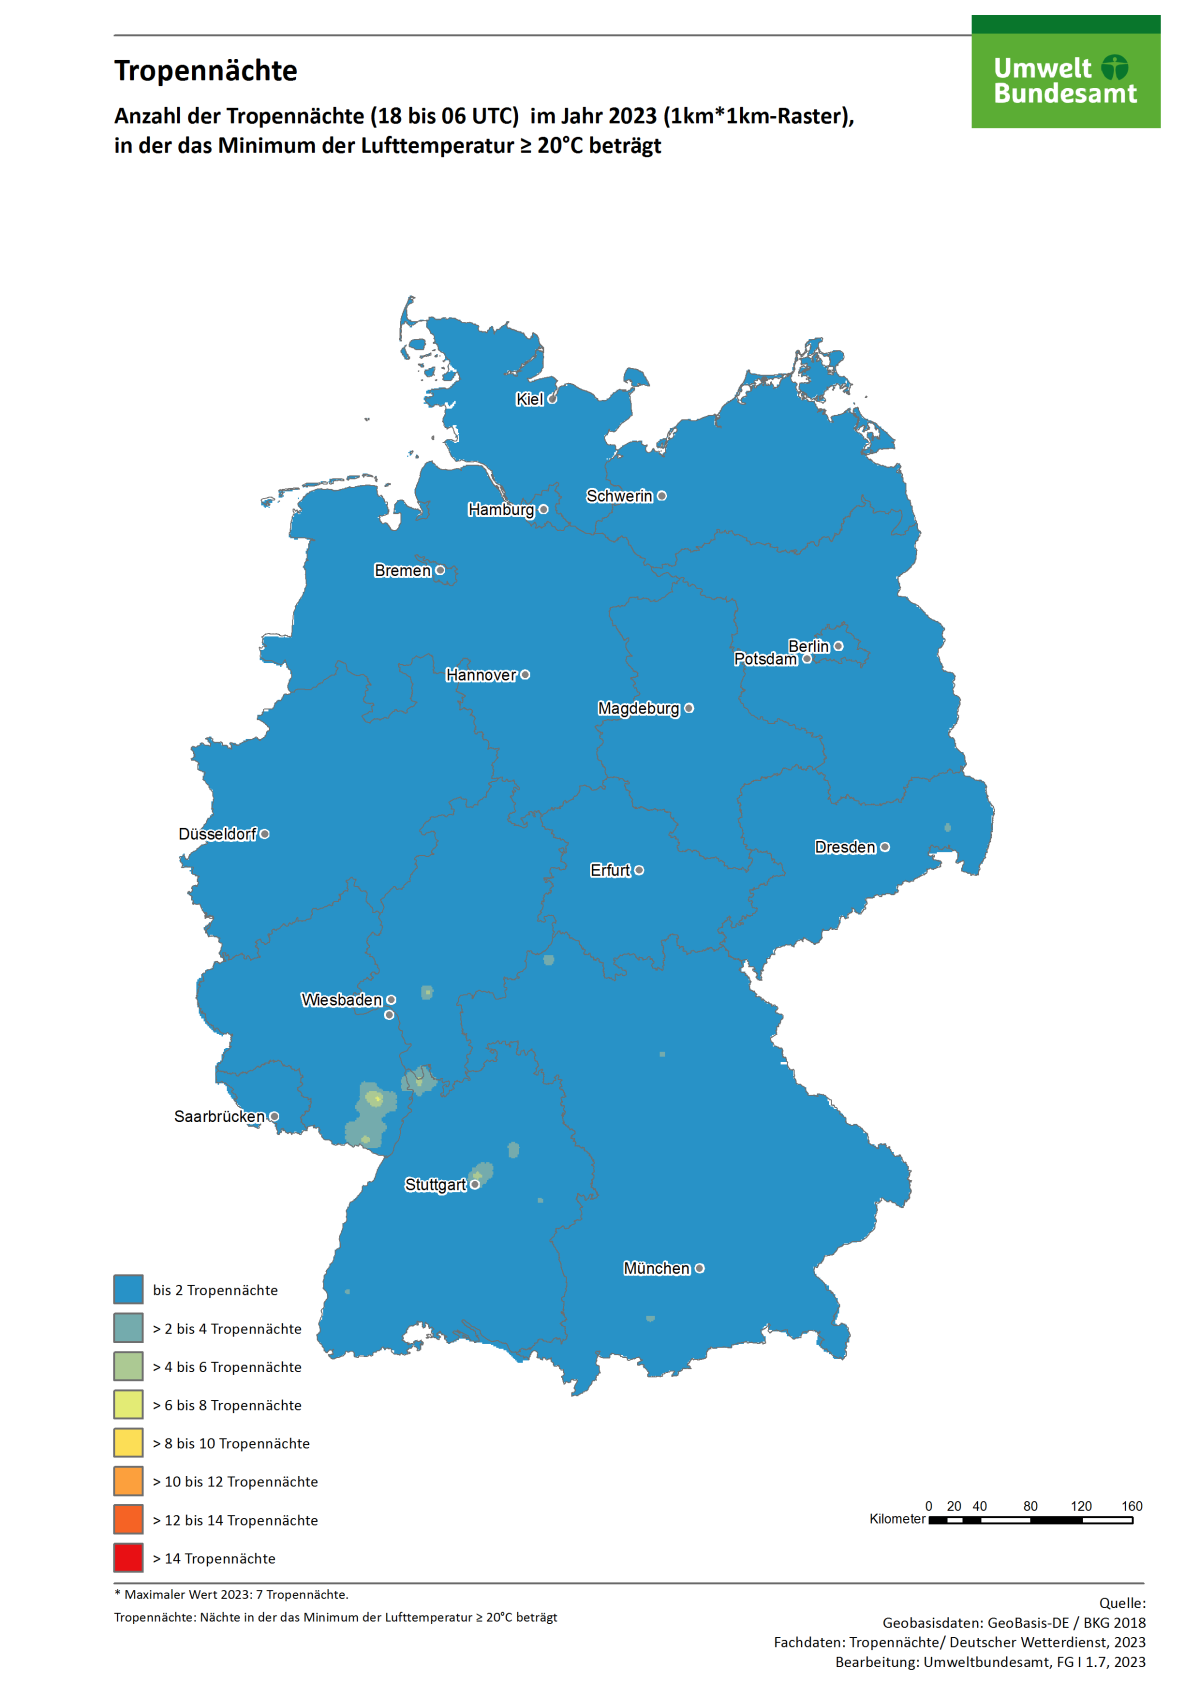 Die Karte zeigt die Anzahl der Tropennächte in Deutschland im Jahr 2023. In diesem Jahr gab es in einzelnen Regionen bis zu 7 Tropennächte.